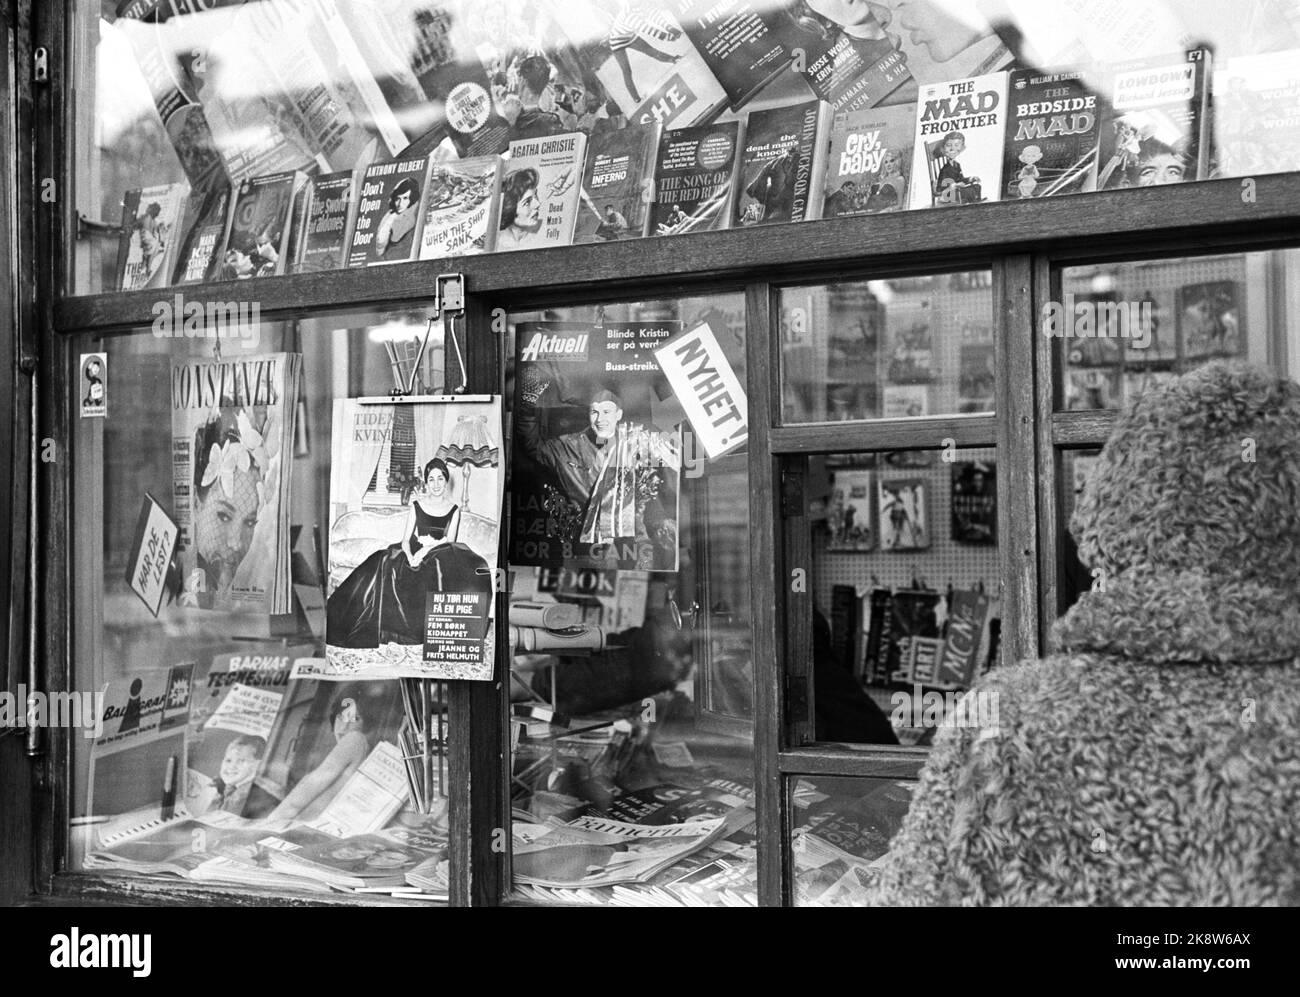 2 février 1963 de Trondheim. Une fenêtre de kiosque / vente de feuilles. Le magazine hebdomadaire est suspendu dans la fenêtre. Photo: Ivar Aaserud / courant / NTB Banque D'Images